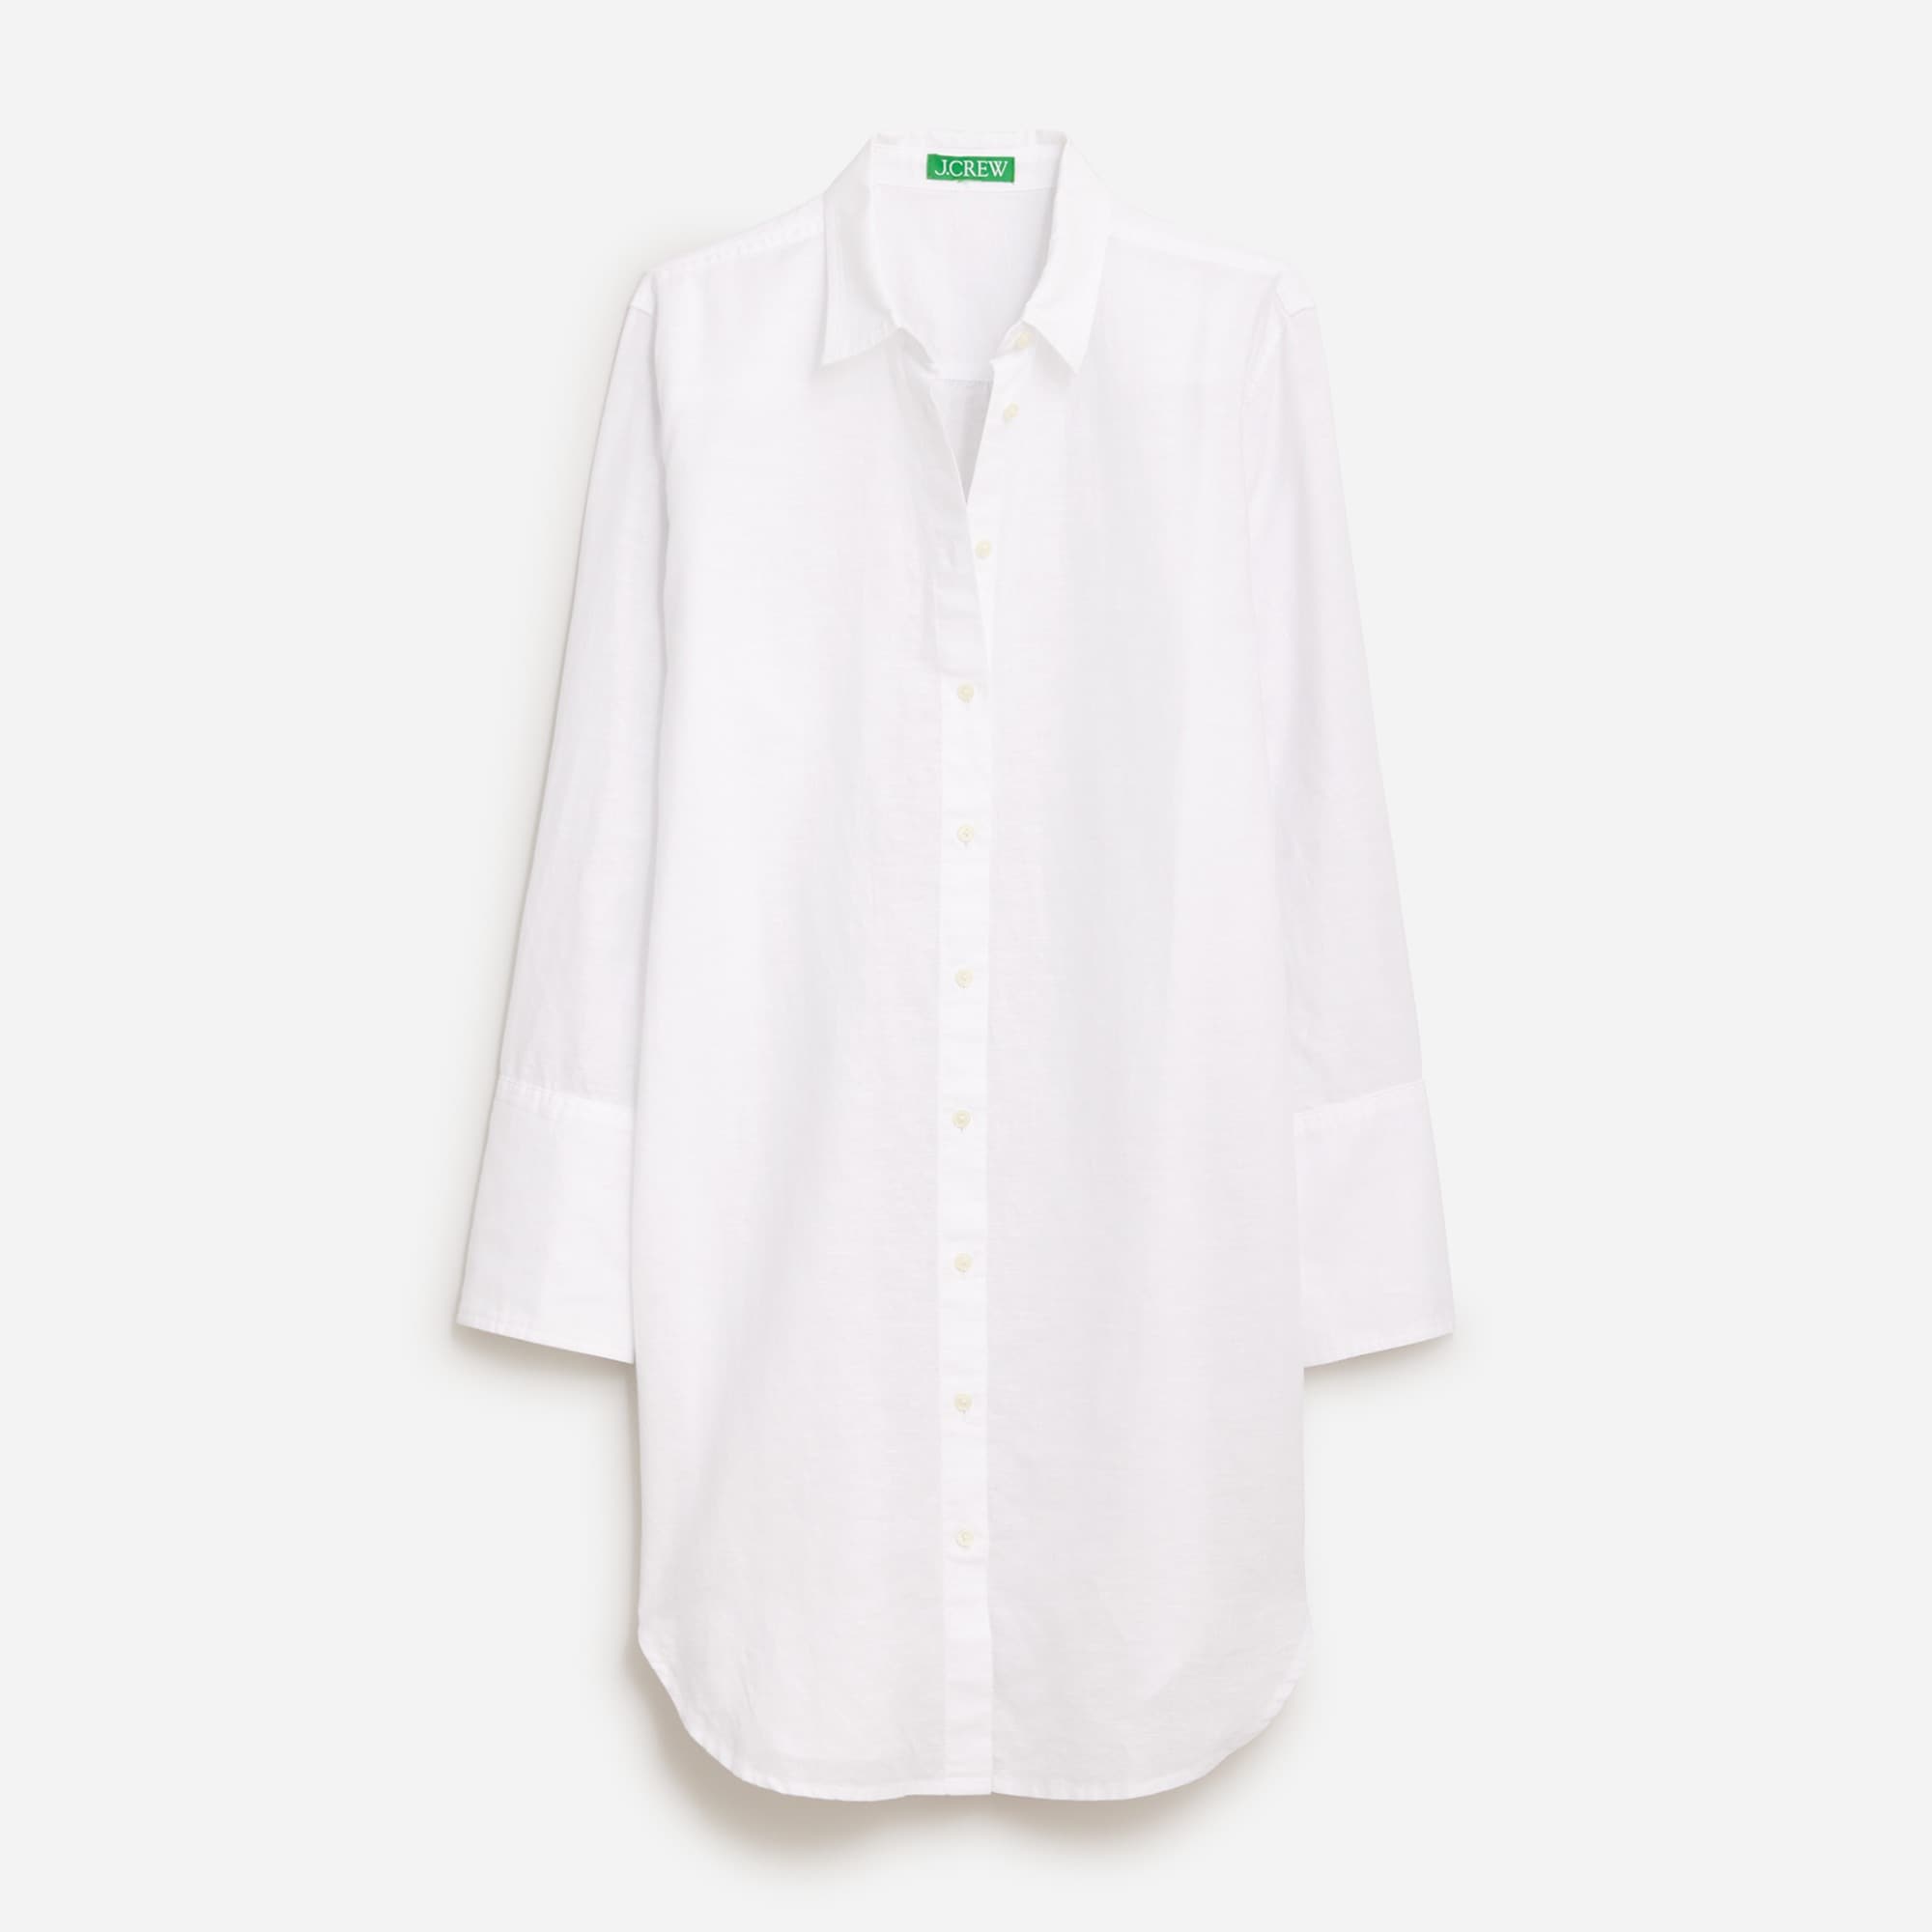  Relaxed-fit beach shirt in linen-cotton blend